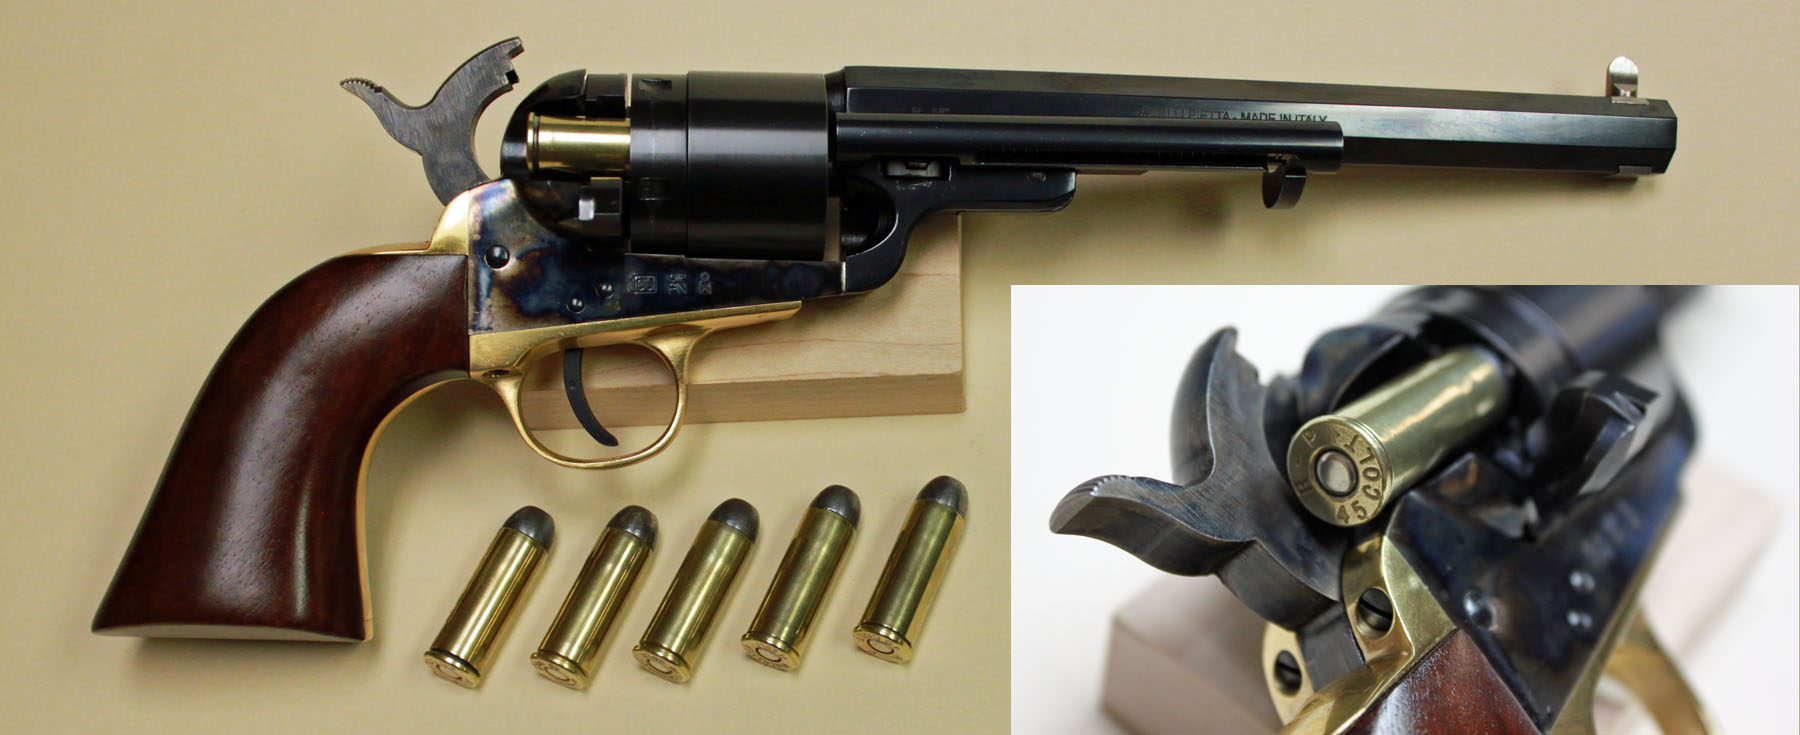 colt 45 revolver ammo